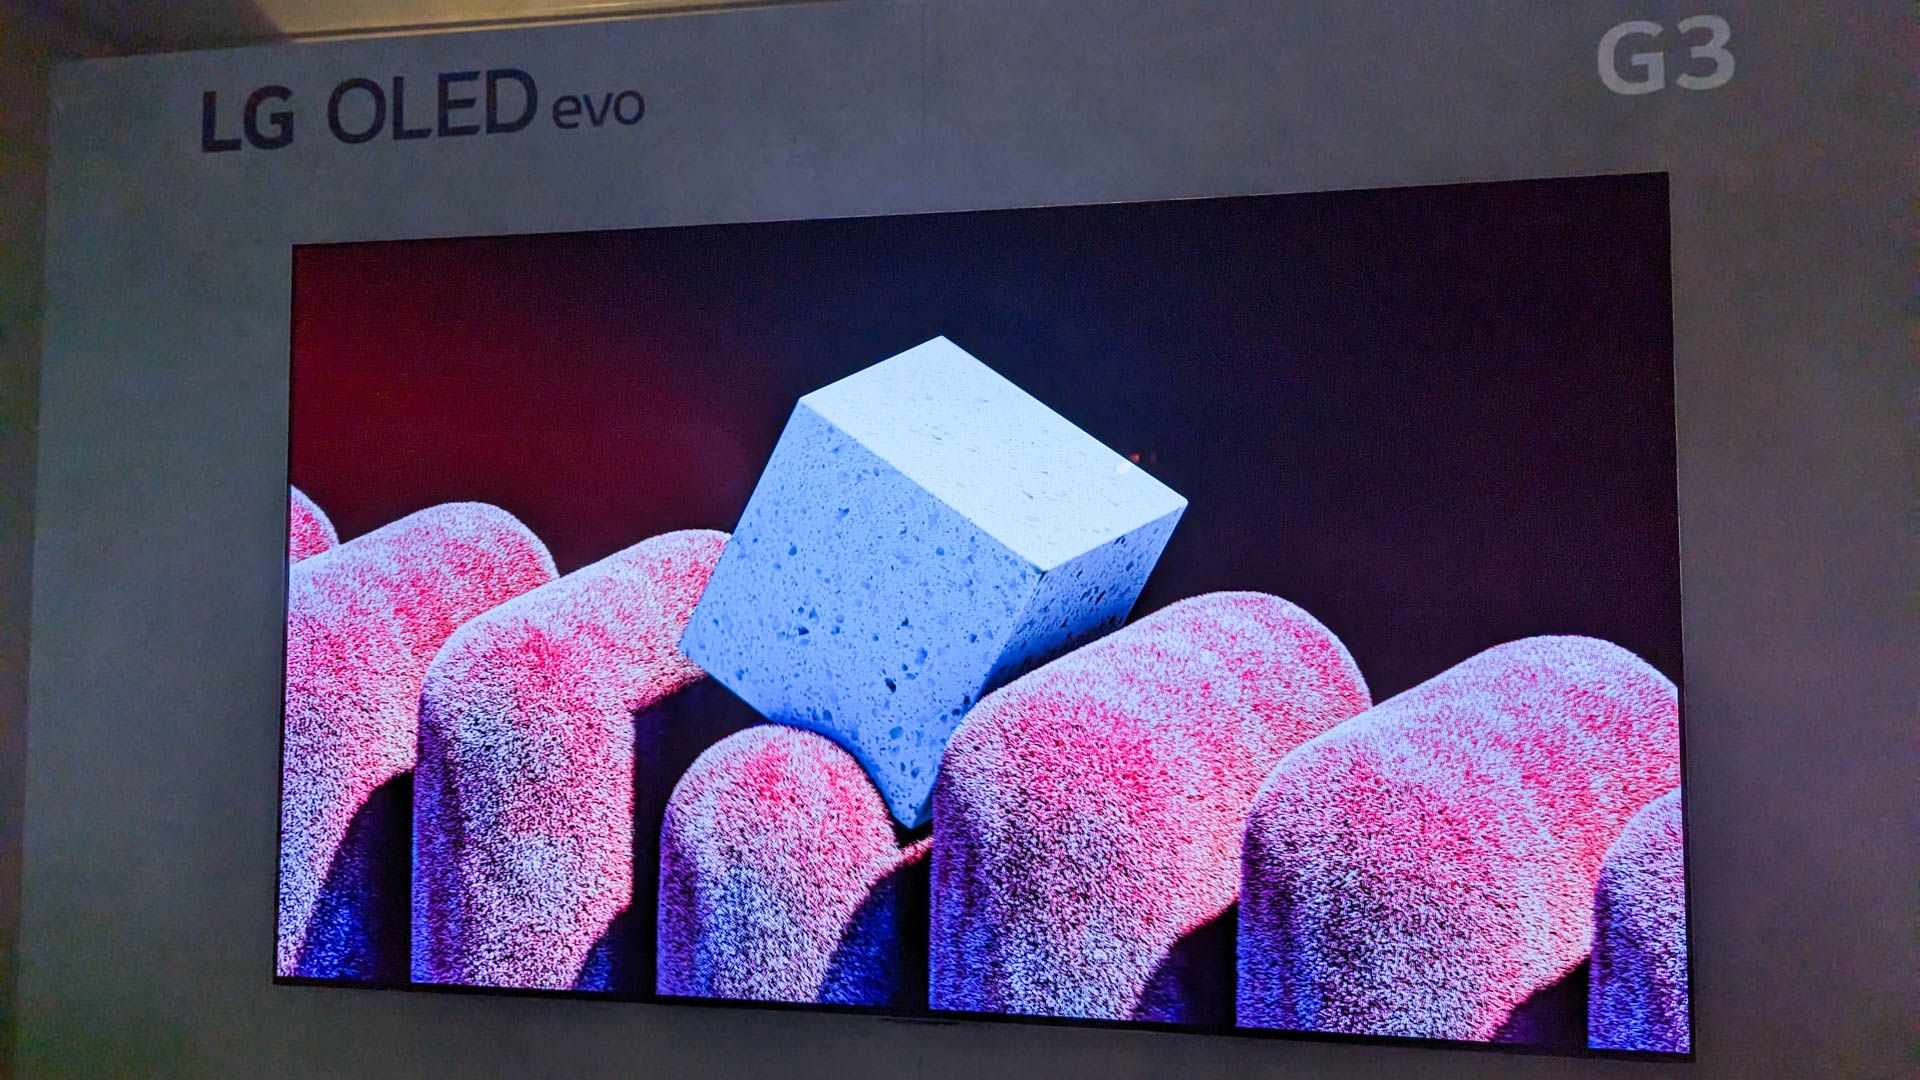 An LG OLED Evo G3 in a display room